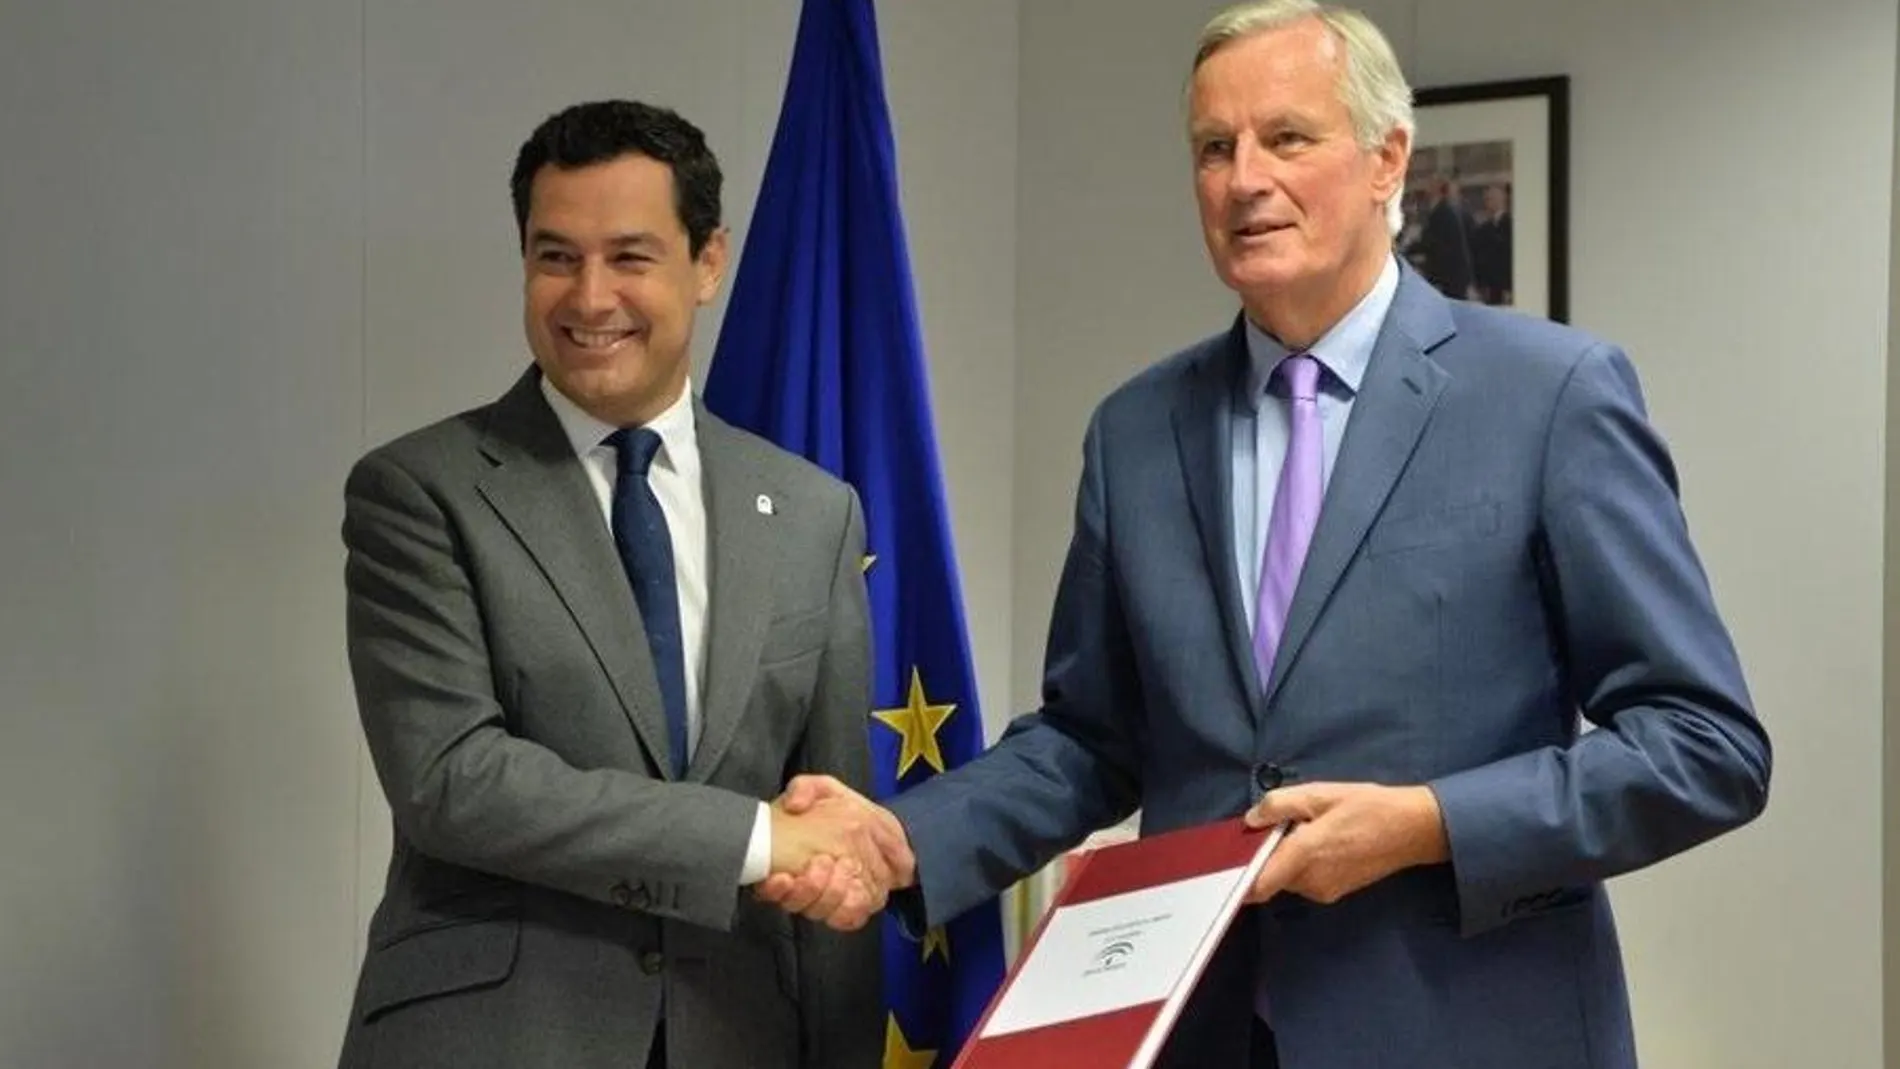 El presidente de la Junta de Andalucía, Juanma Moreno, se reúne en Bruselas con el negociador jefe de la Unión Europea para el Brexit, Michel Barnier / La Razón